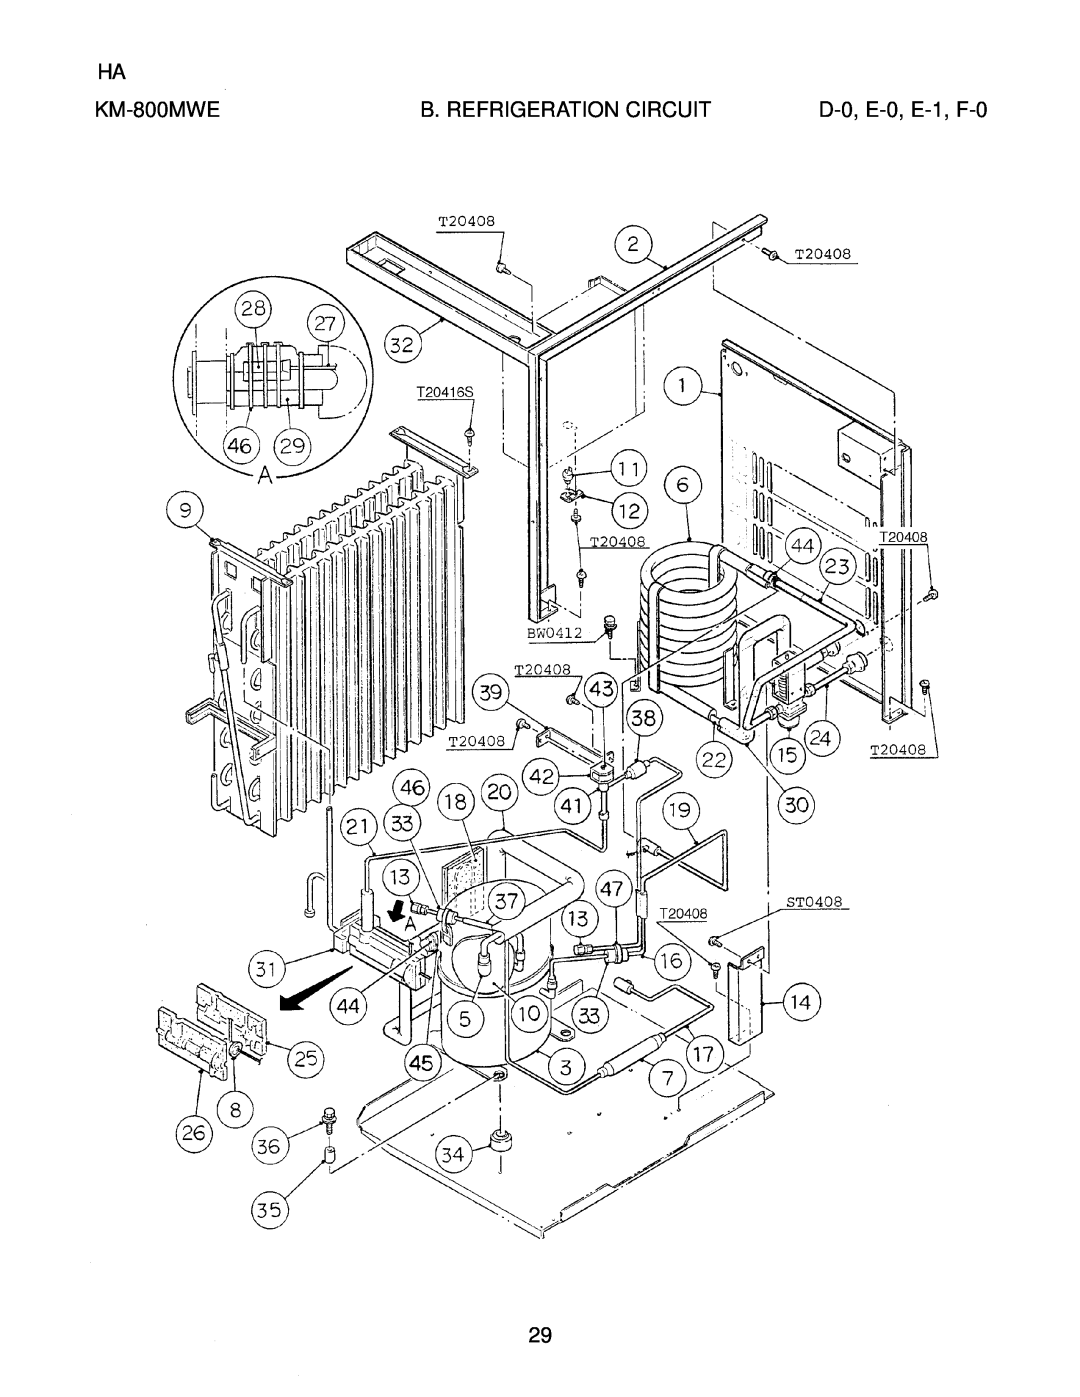 Hoshizaki KM-800MRE, KM-800MAE manual D-0, E-0, E-1, F-0, KM-800MWE, B. Refrigeration Circuit 